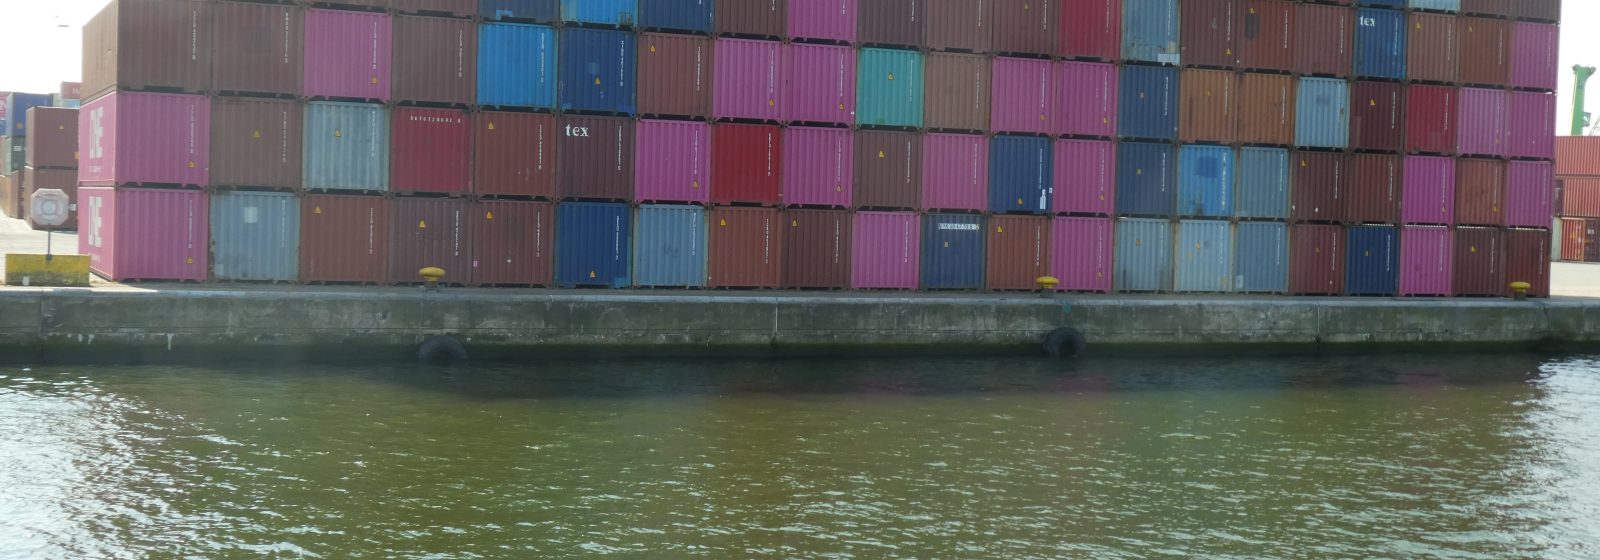 20220428 lege containers in haven Antwerpen